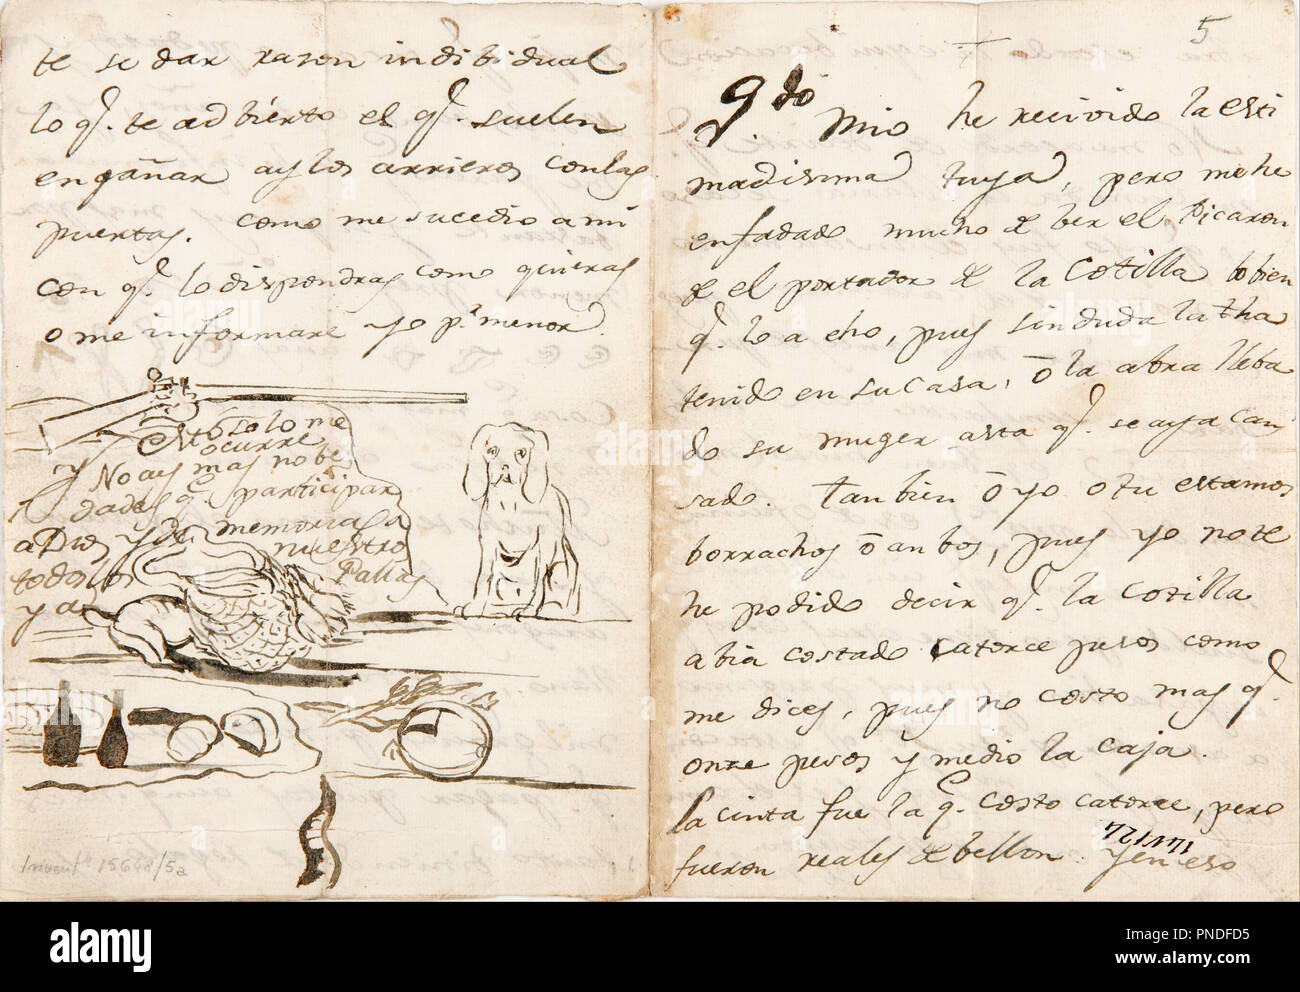 Lettre à Martín Zapater. Date/période : 1783. Largeur : 29,7 cm. Hauteur : 20,8 cm (complet). Auteur : GOYA, FRANCISCO DE. Banque D'Images